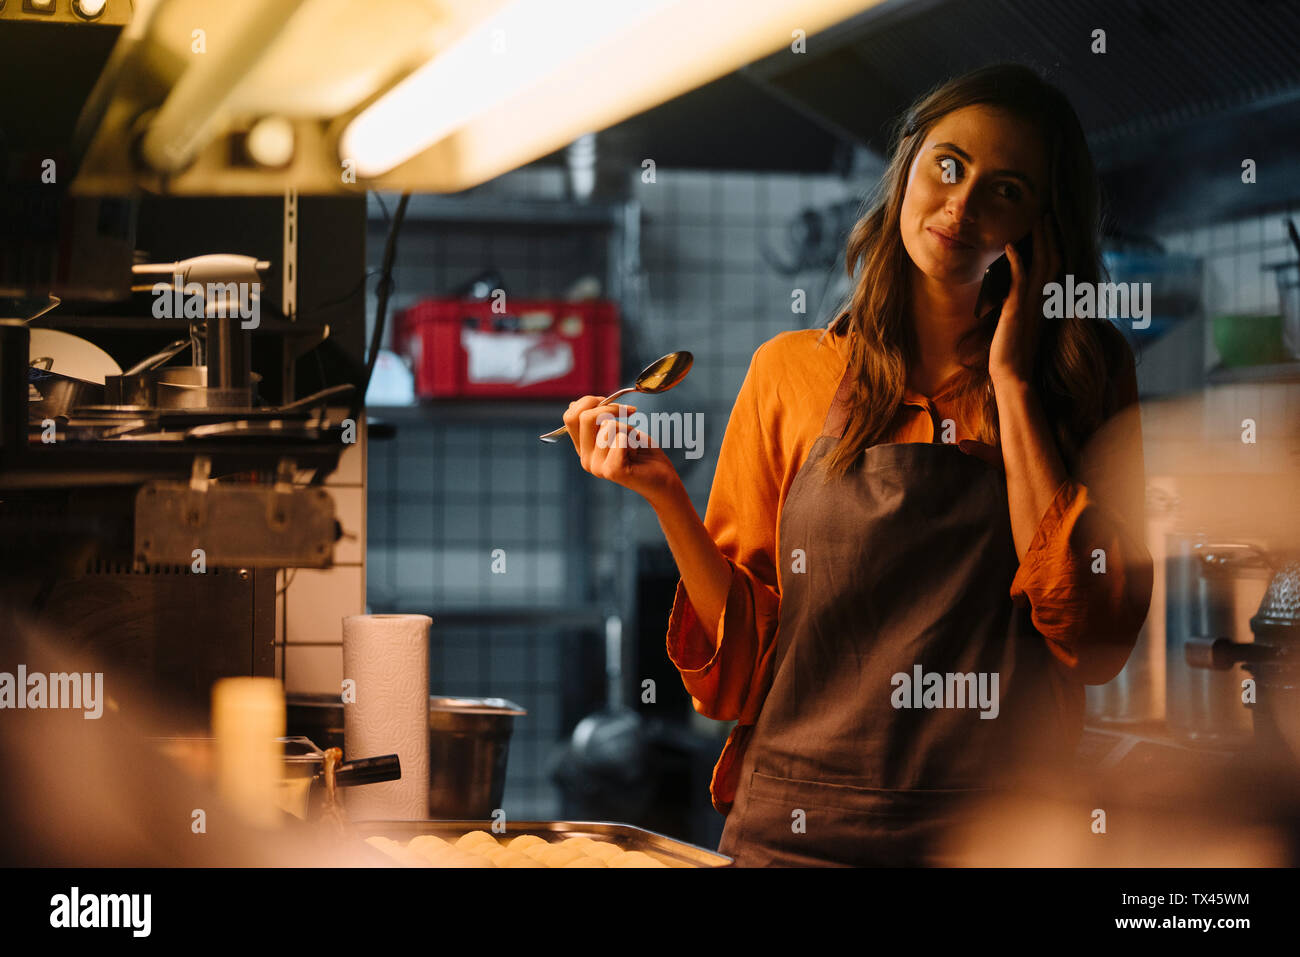 Junge Frau mit Handy im Restaurant Küche Stockfoto